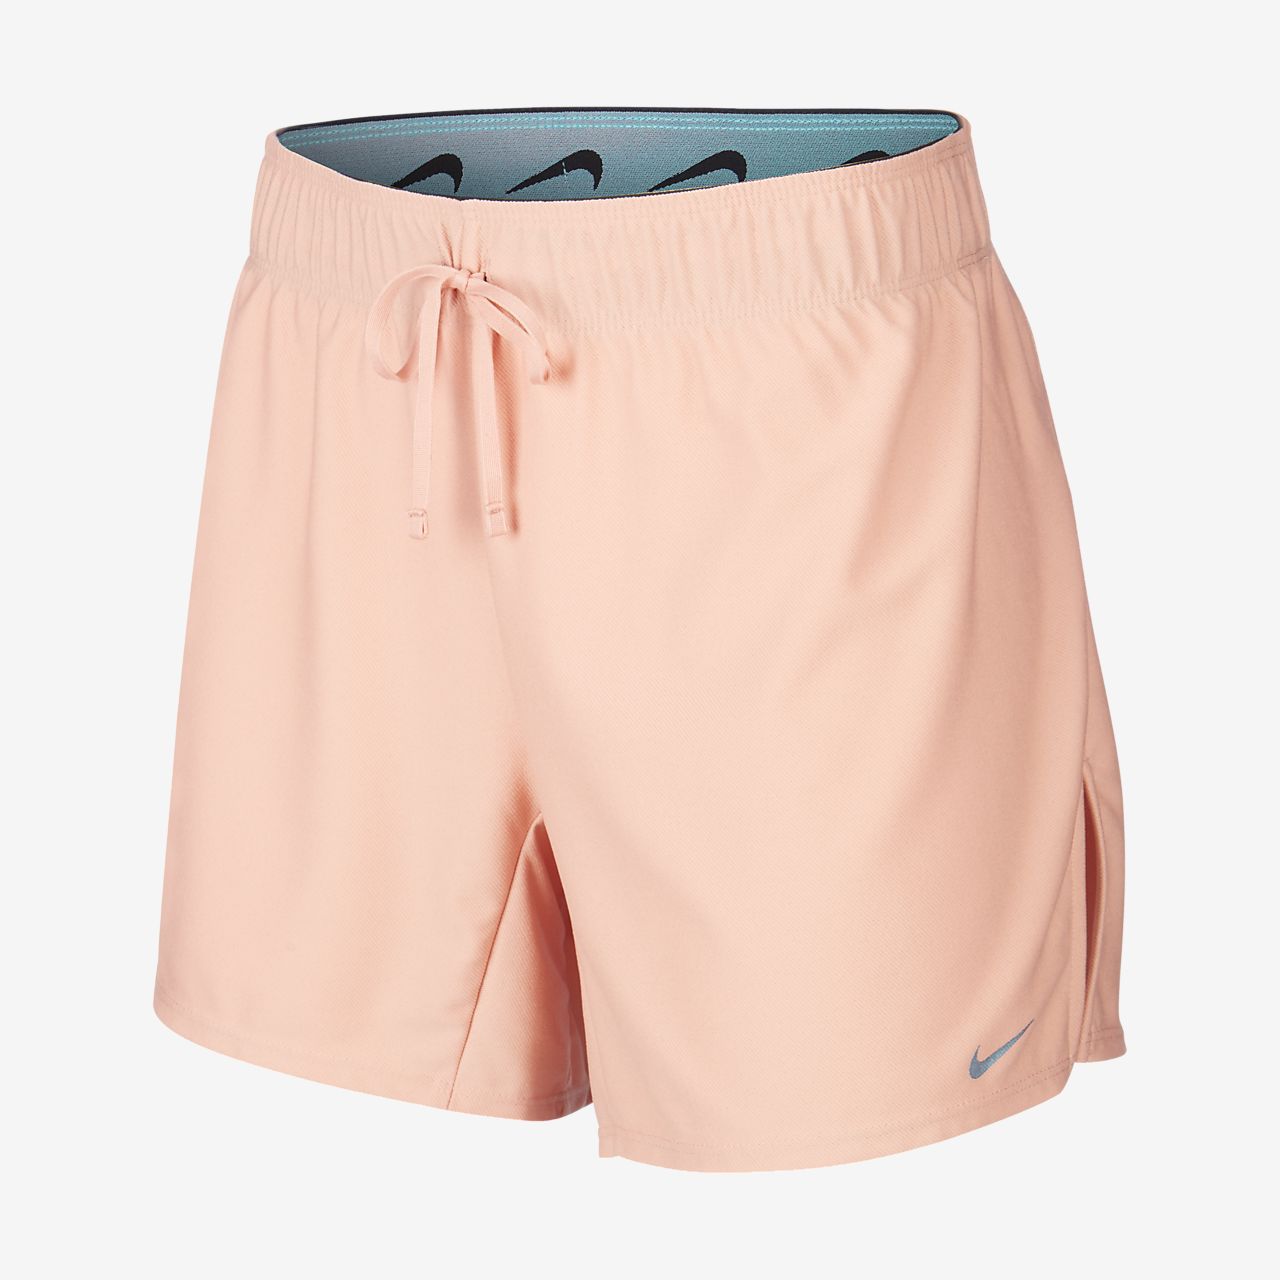 pink nike shorts